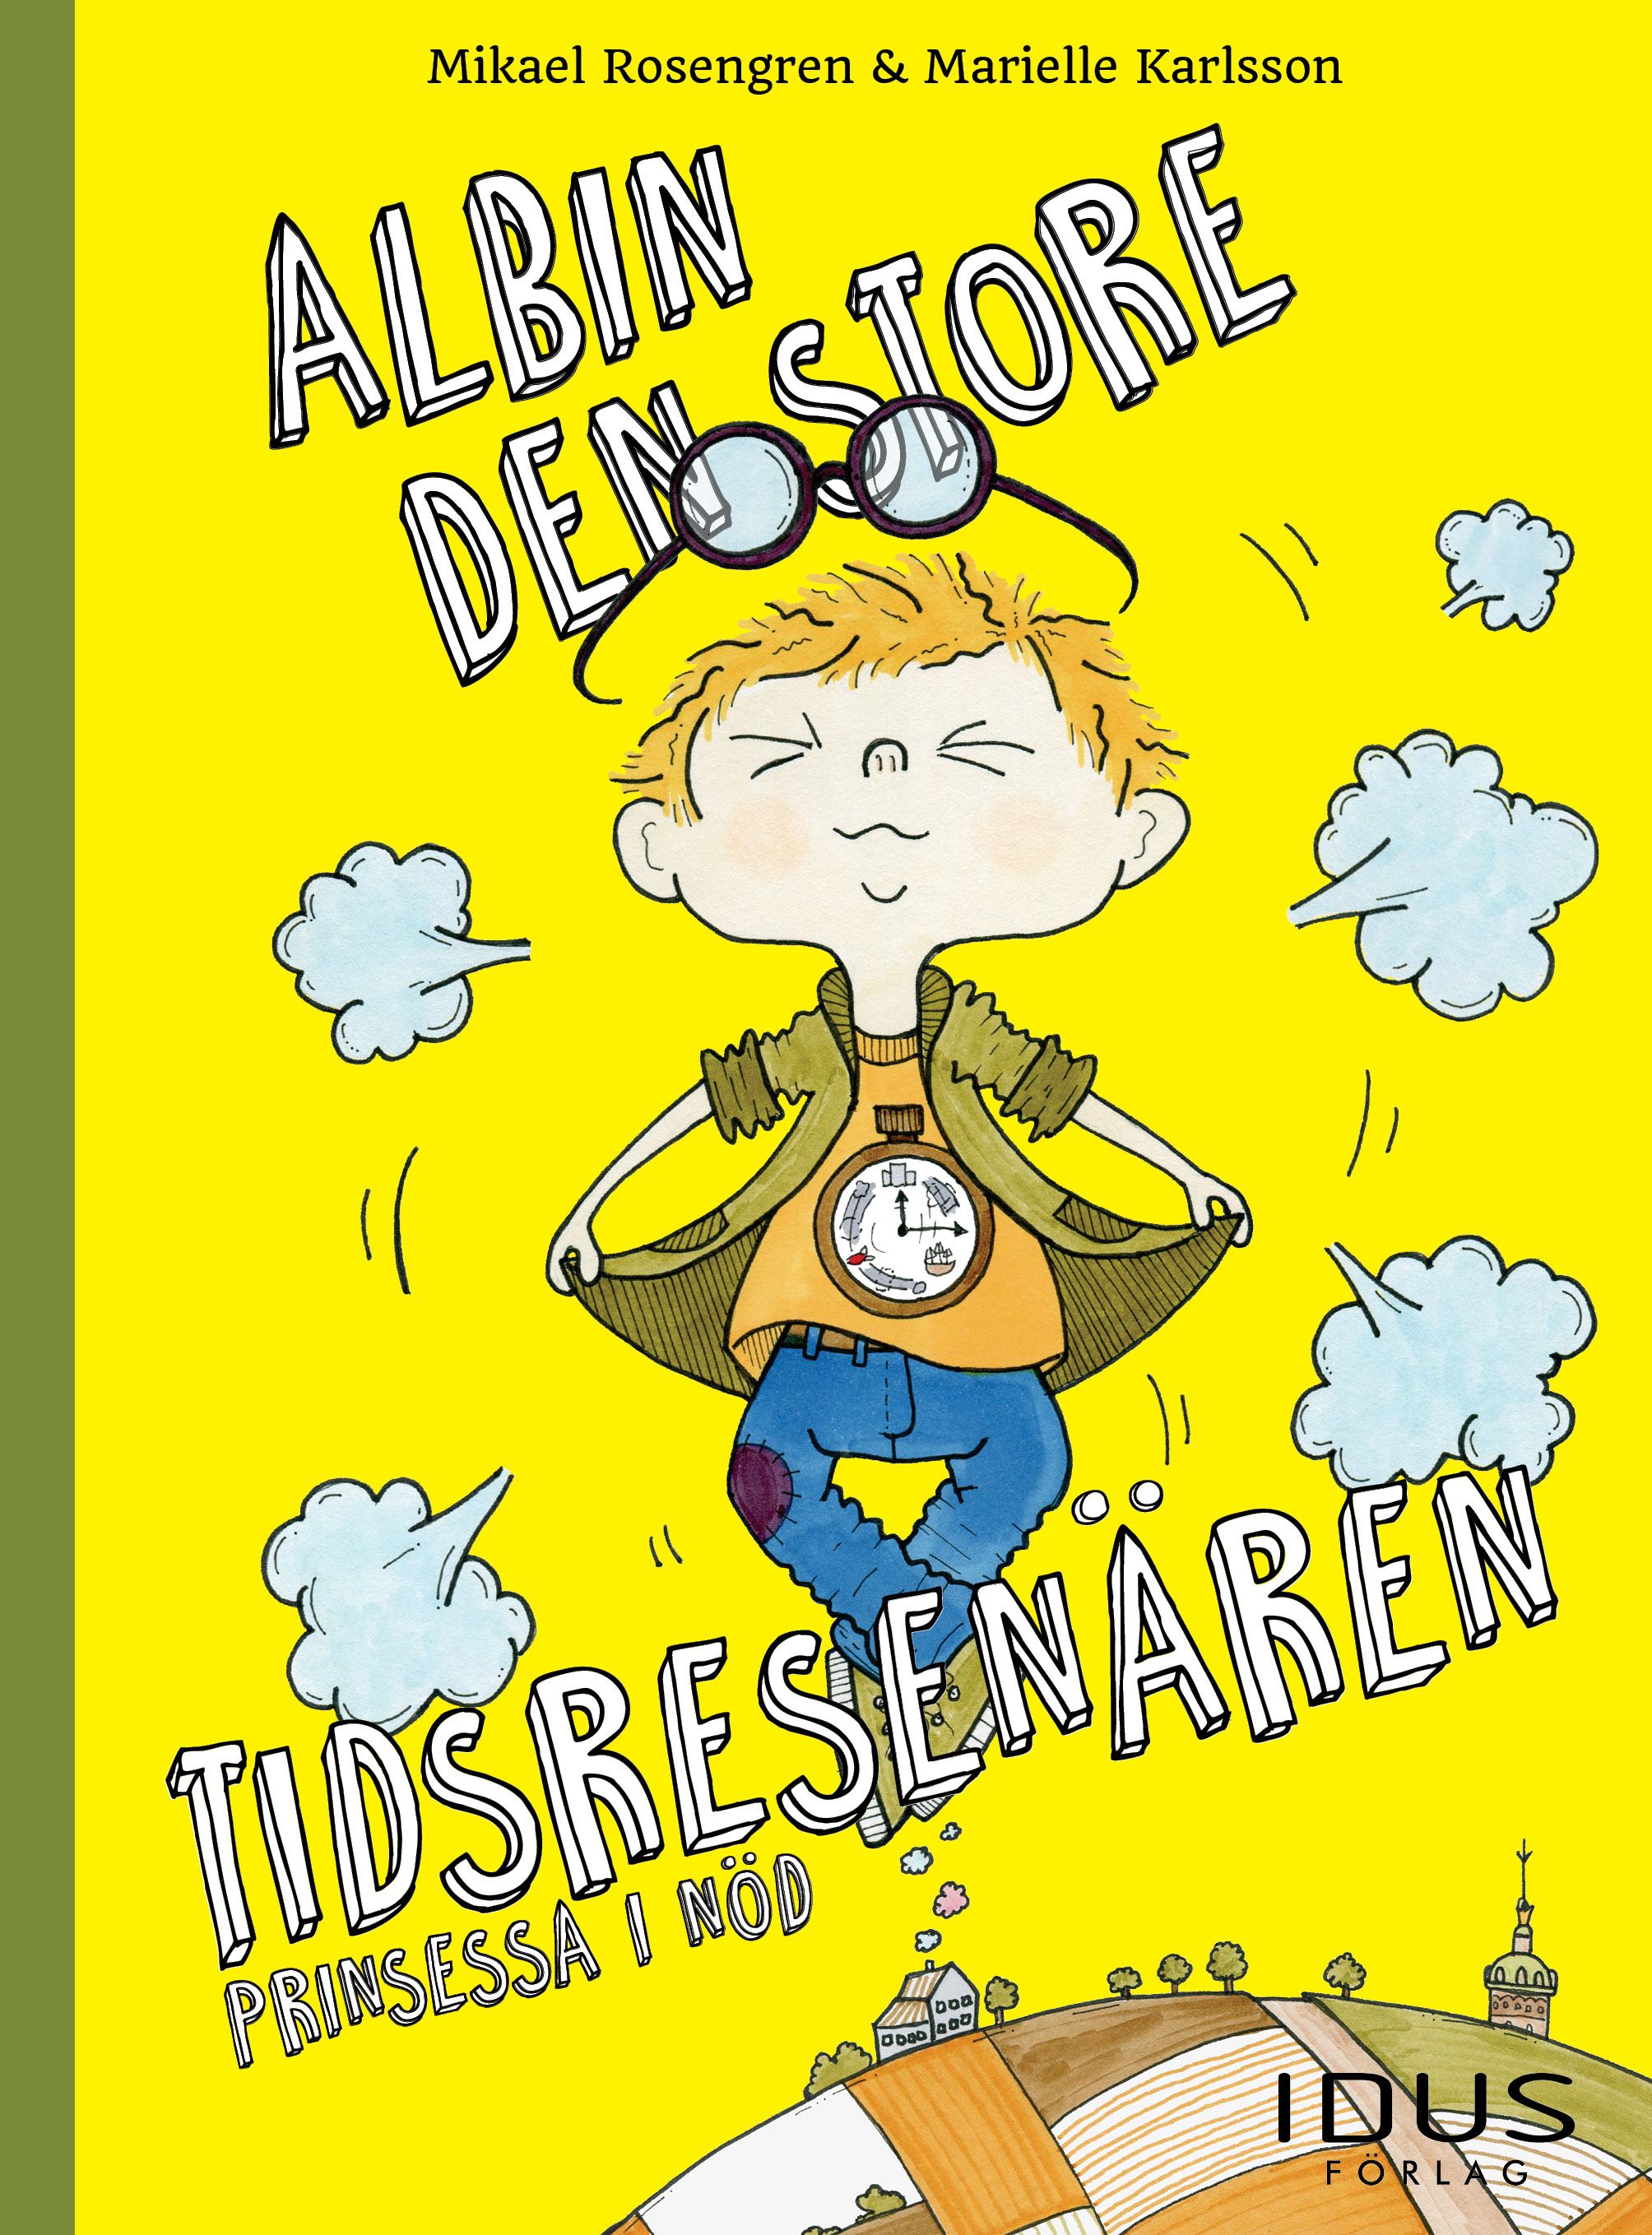 Albin, den store tidsresenären - Prinsessa i nöd, e-bog af Mikael Rosengren